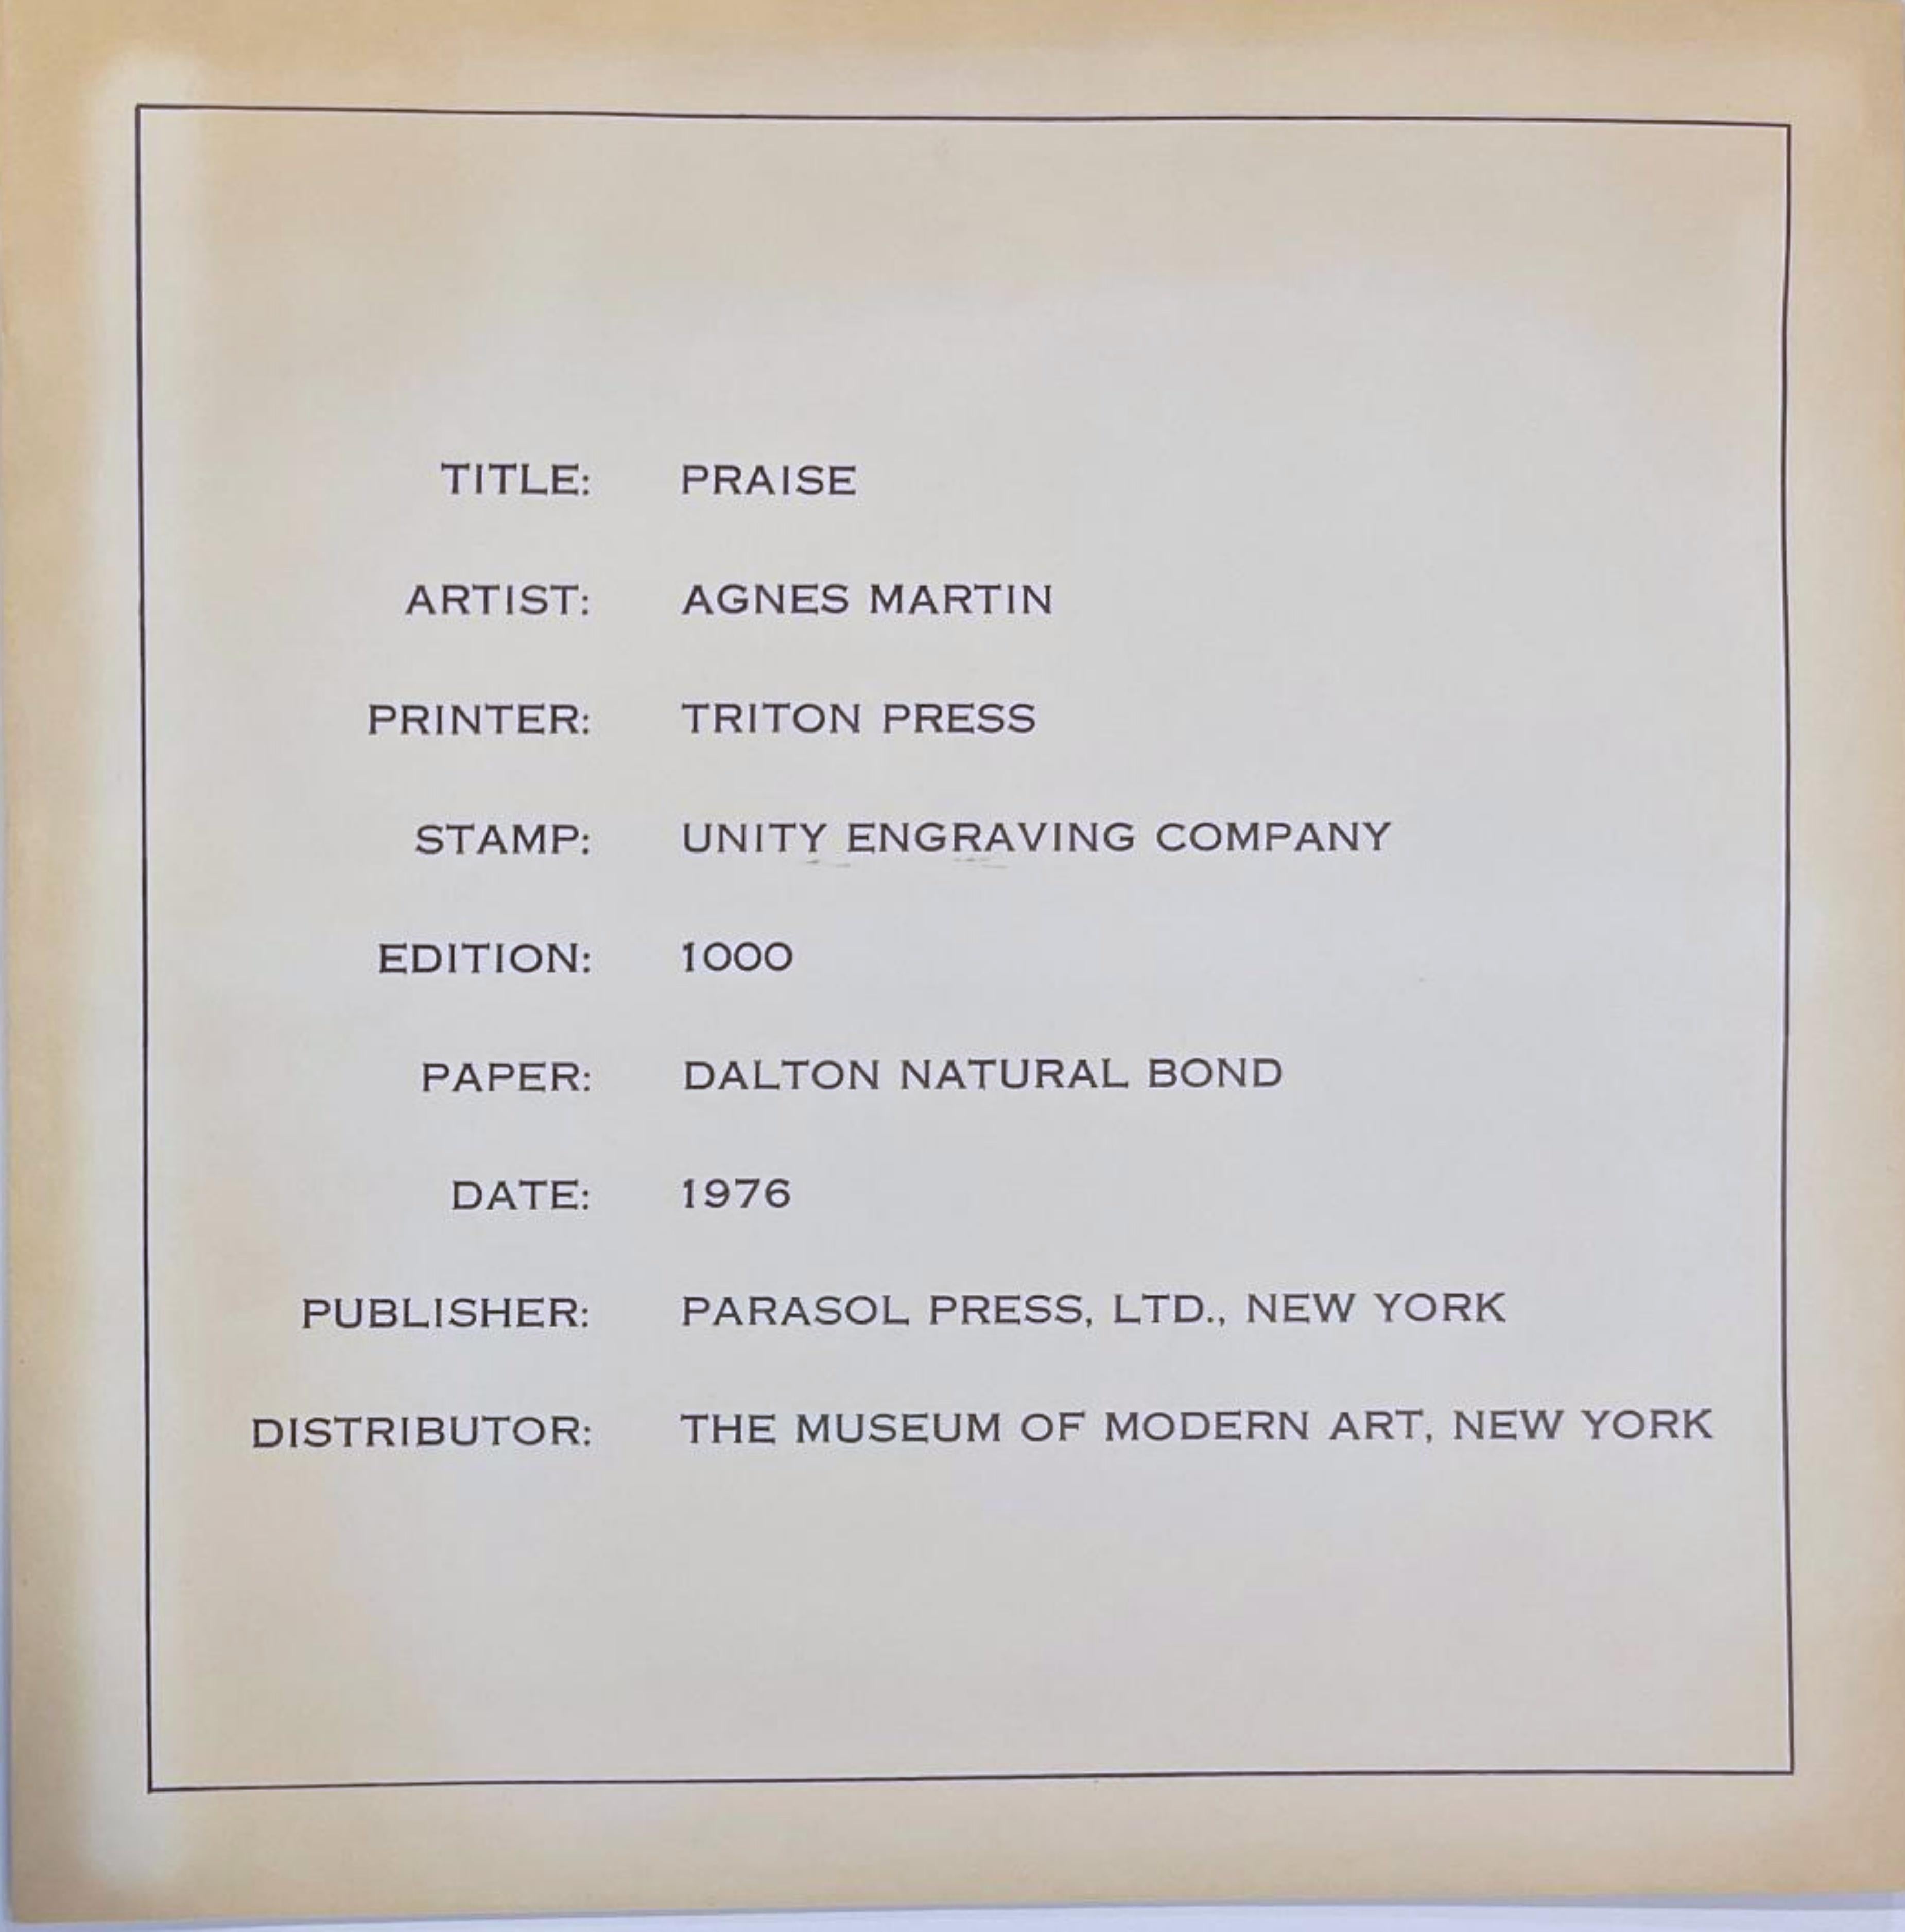 AGNES MARTIN
Lob, 1976
Lithographie auf Dalton Natural Bond Papier. Goldgeprägte Signatur auf der Vorderseite
Ein nicht nummerierter Probedruck, abgesehen von der regulären Auflage von 1000 Stück
Begleitet von dem Originalumschlag (siehe Foto)
11 ×